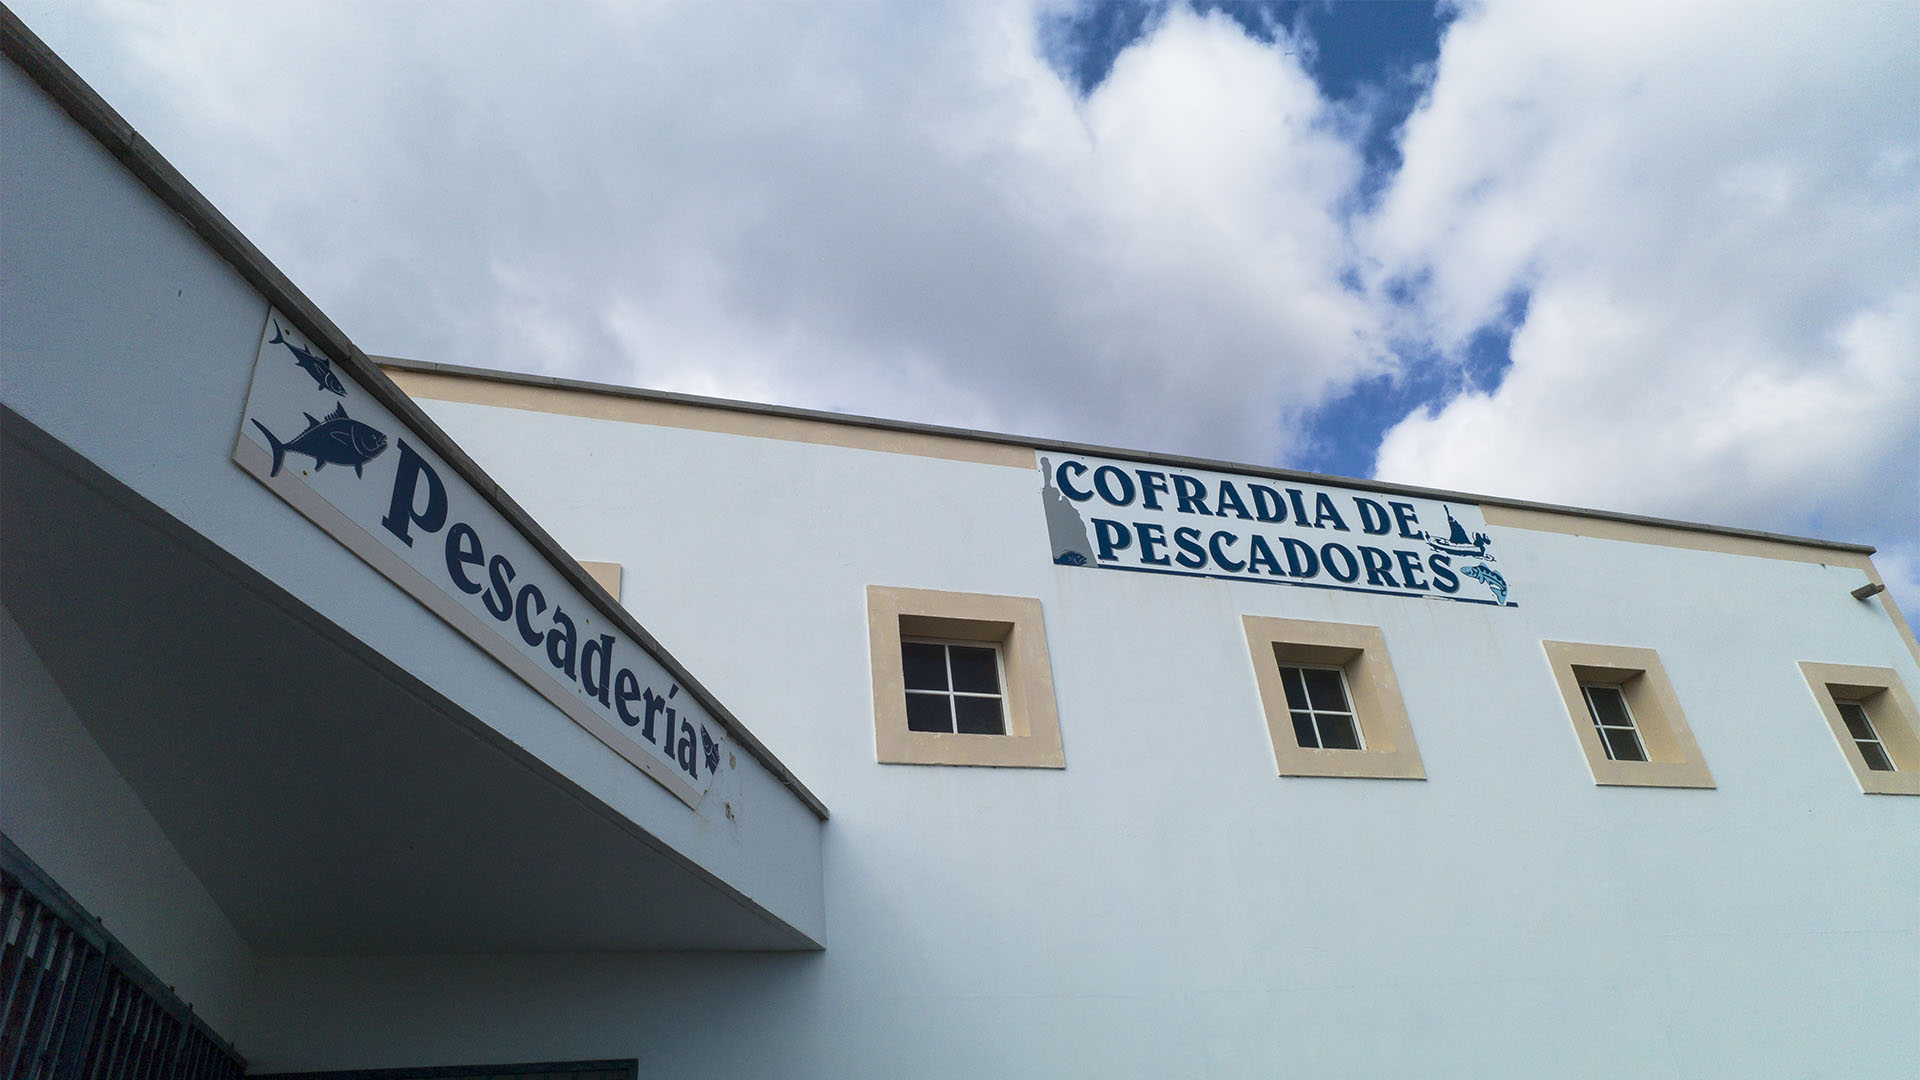 Cofradia de Pescadores, die Bruderschaften der lokalen Fischer. Hier kann man auf den Kanaren immer frischen Fisch kaufen oder in einfachen angeschlossenen Restaurants essen.